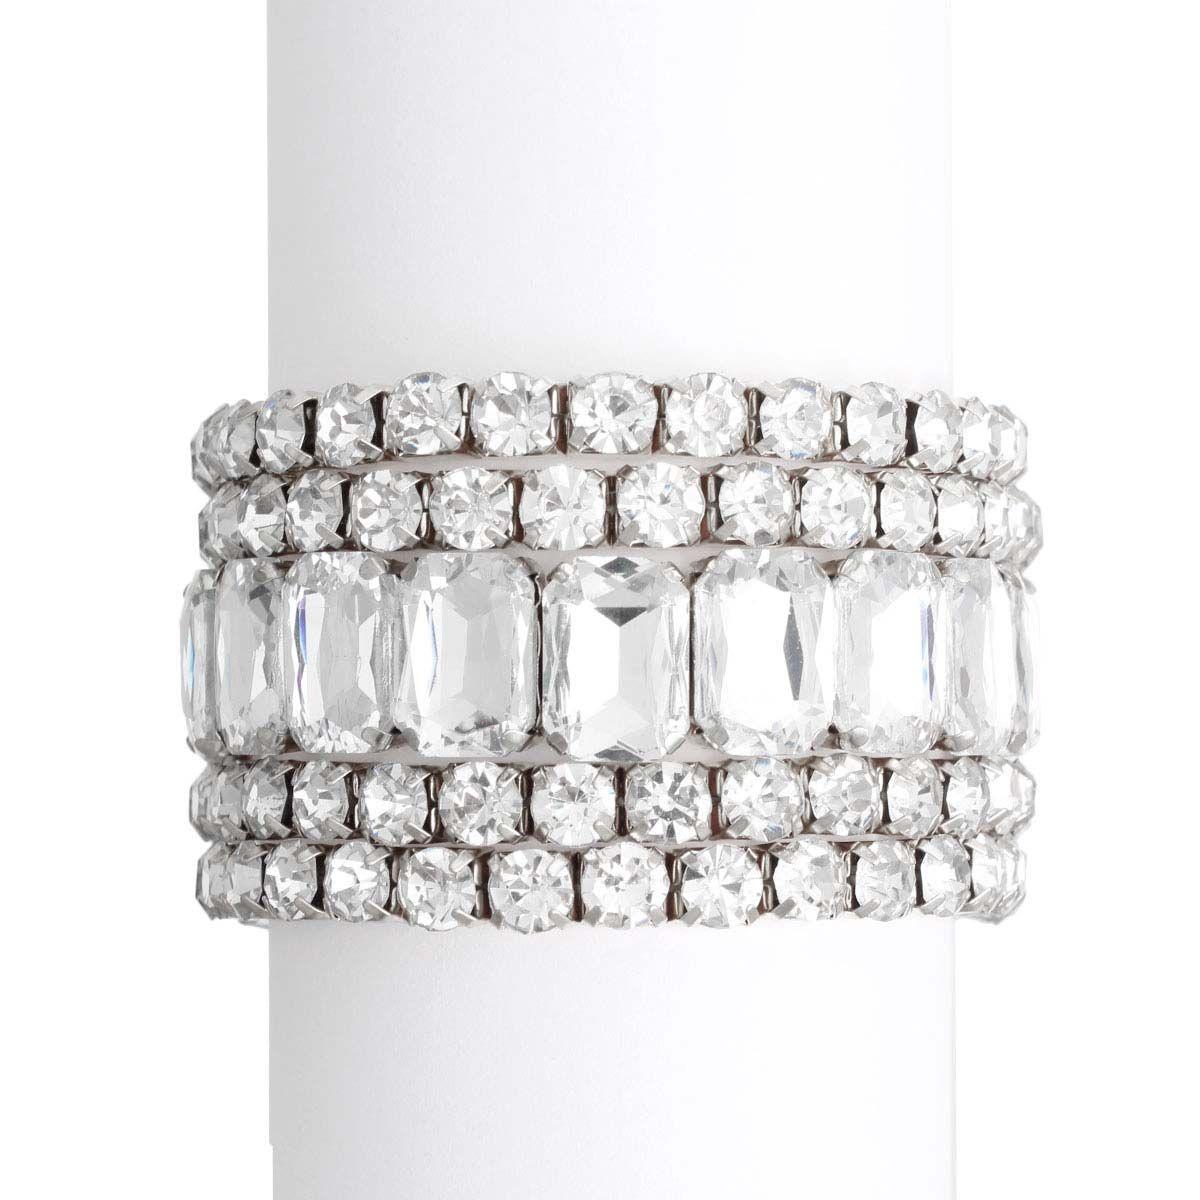 Silvertone & Acrylic Crystal Bracelets